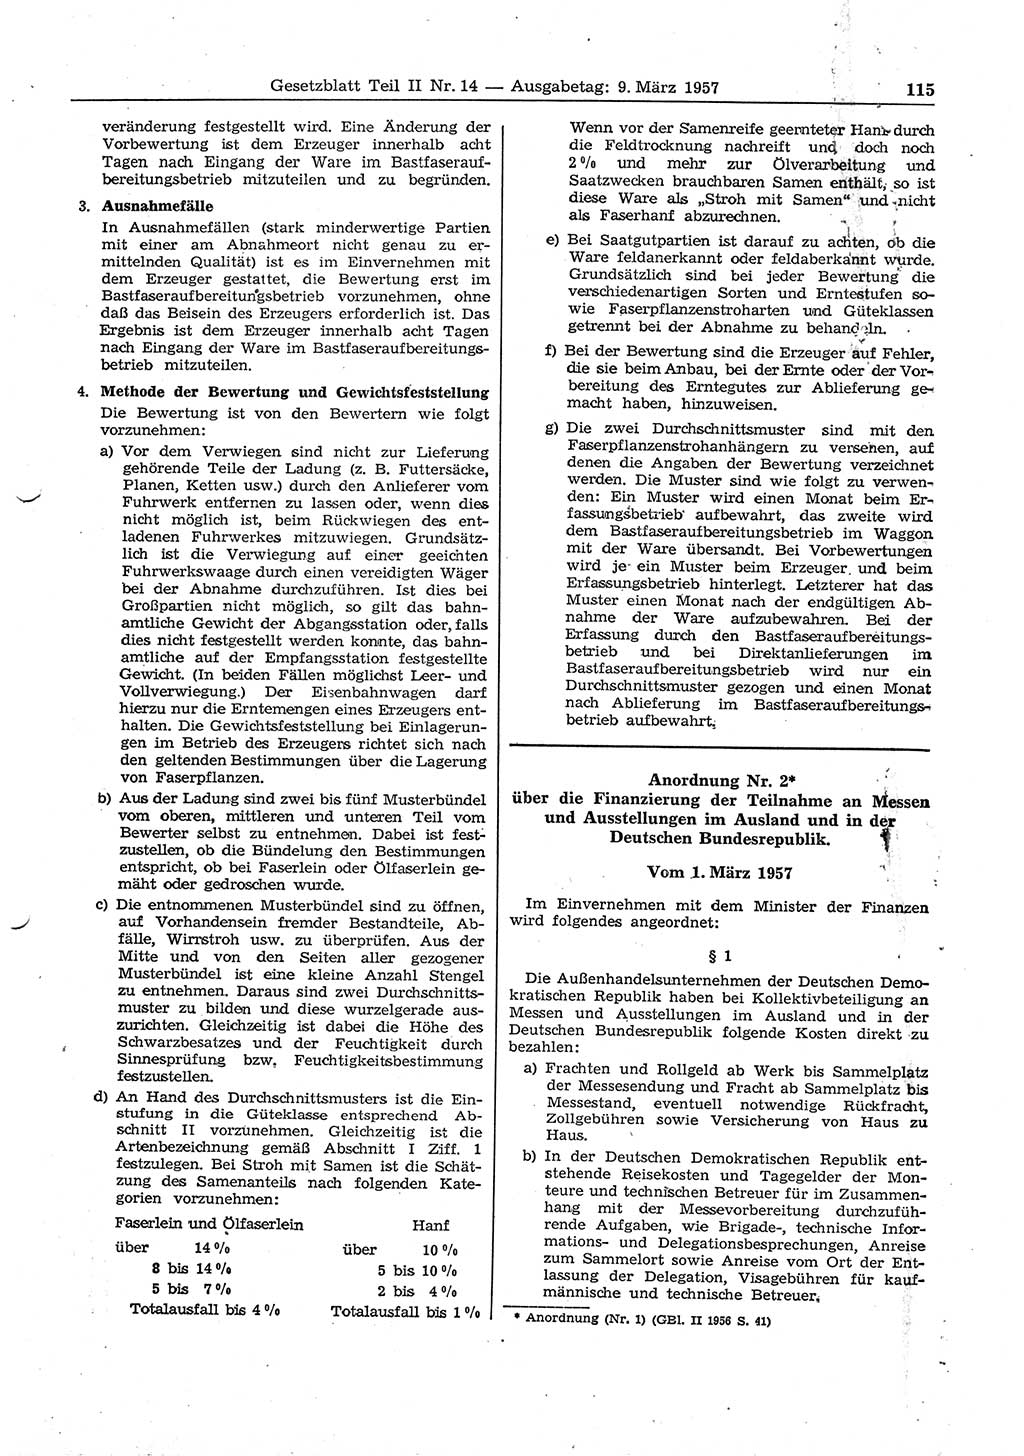 Gesetzblatt (GBl.) der Deutschen Demokratischen Republik (DDR) Teil ⅠⅠ 1957, Seite 115 (GBl. DDR ⅠⅠ 1957, S. 115)